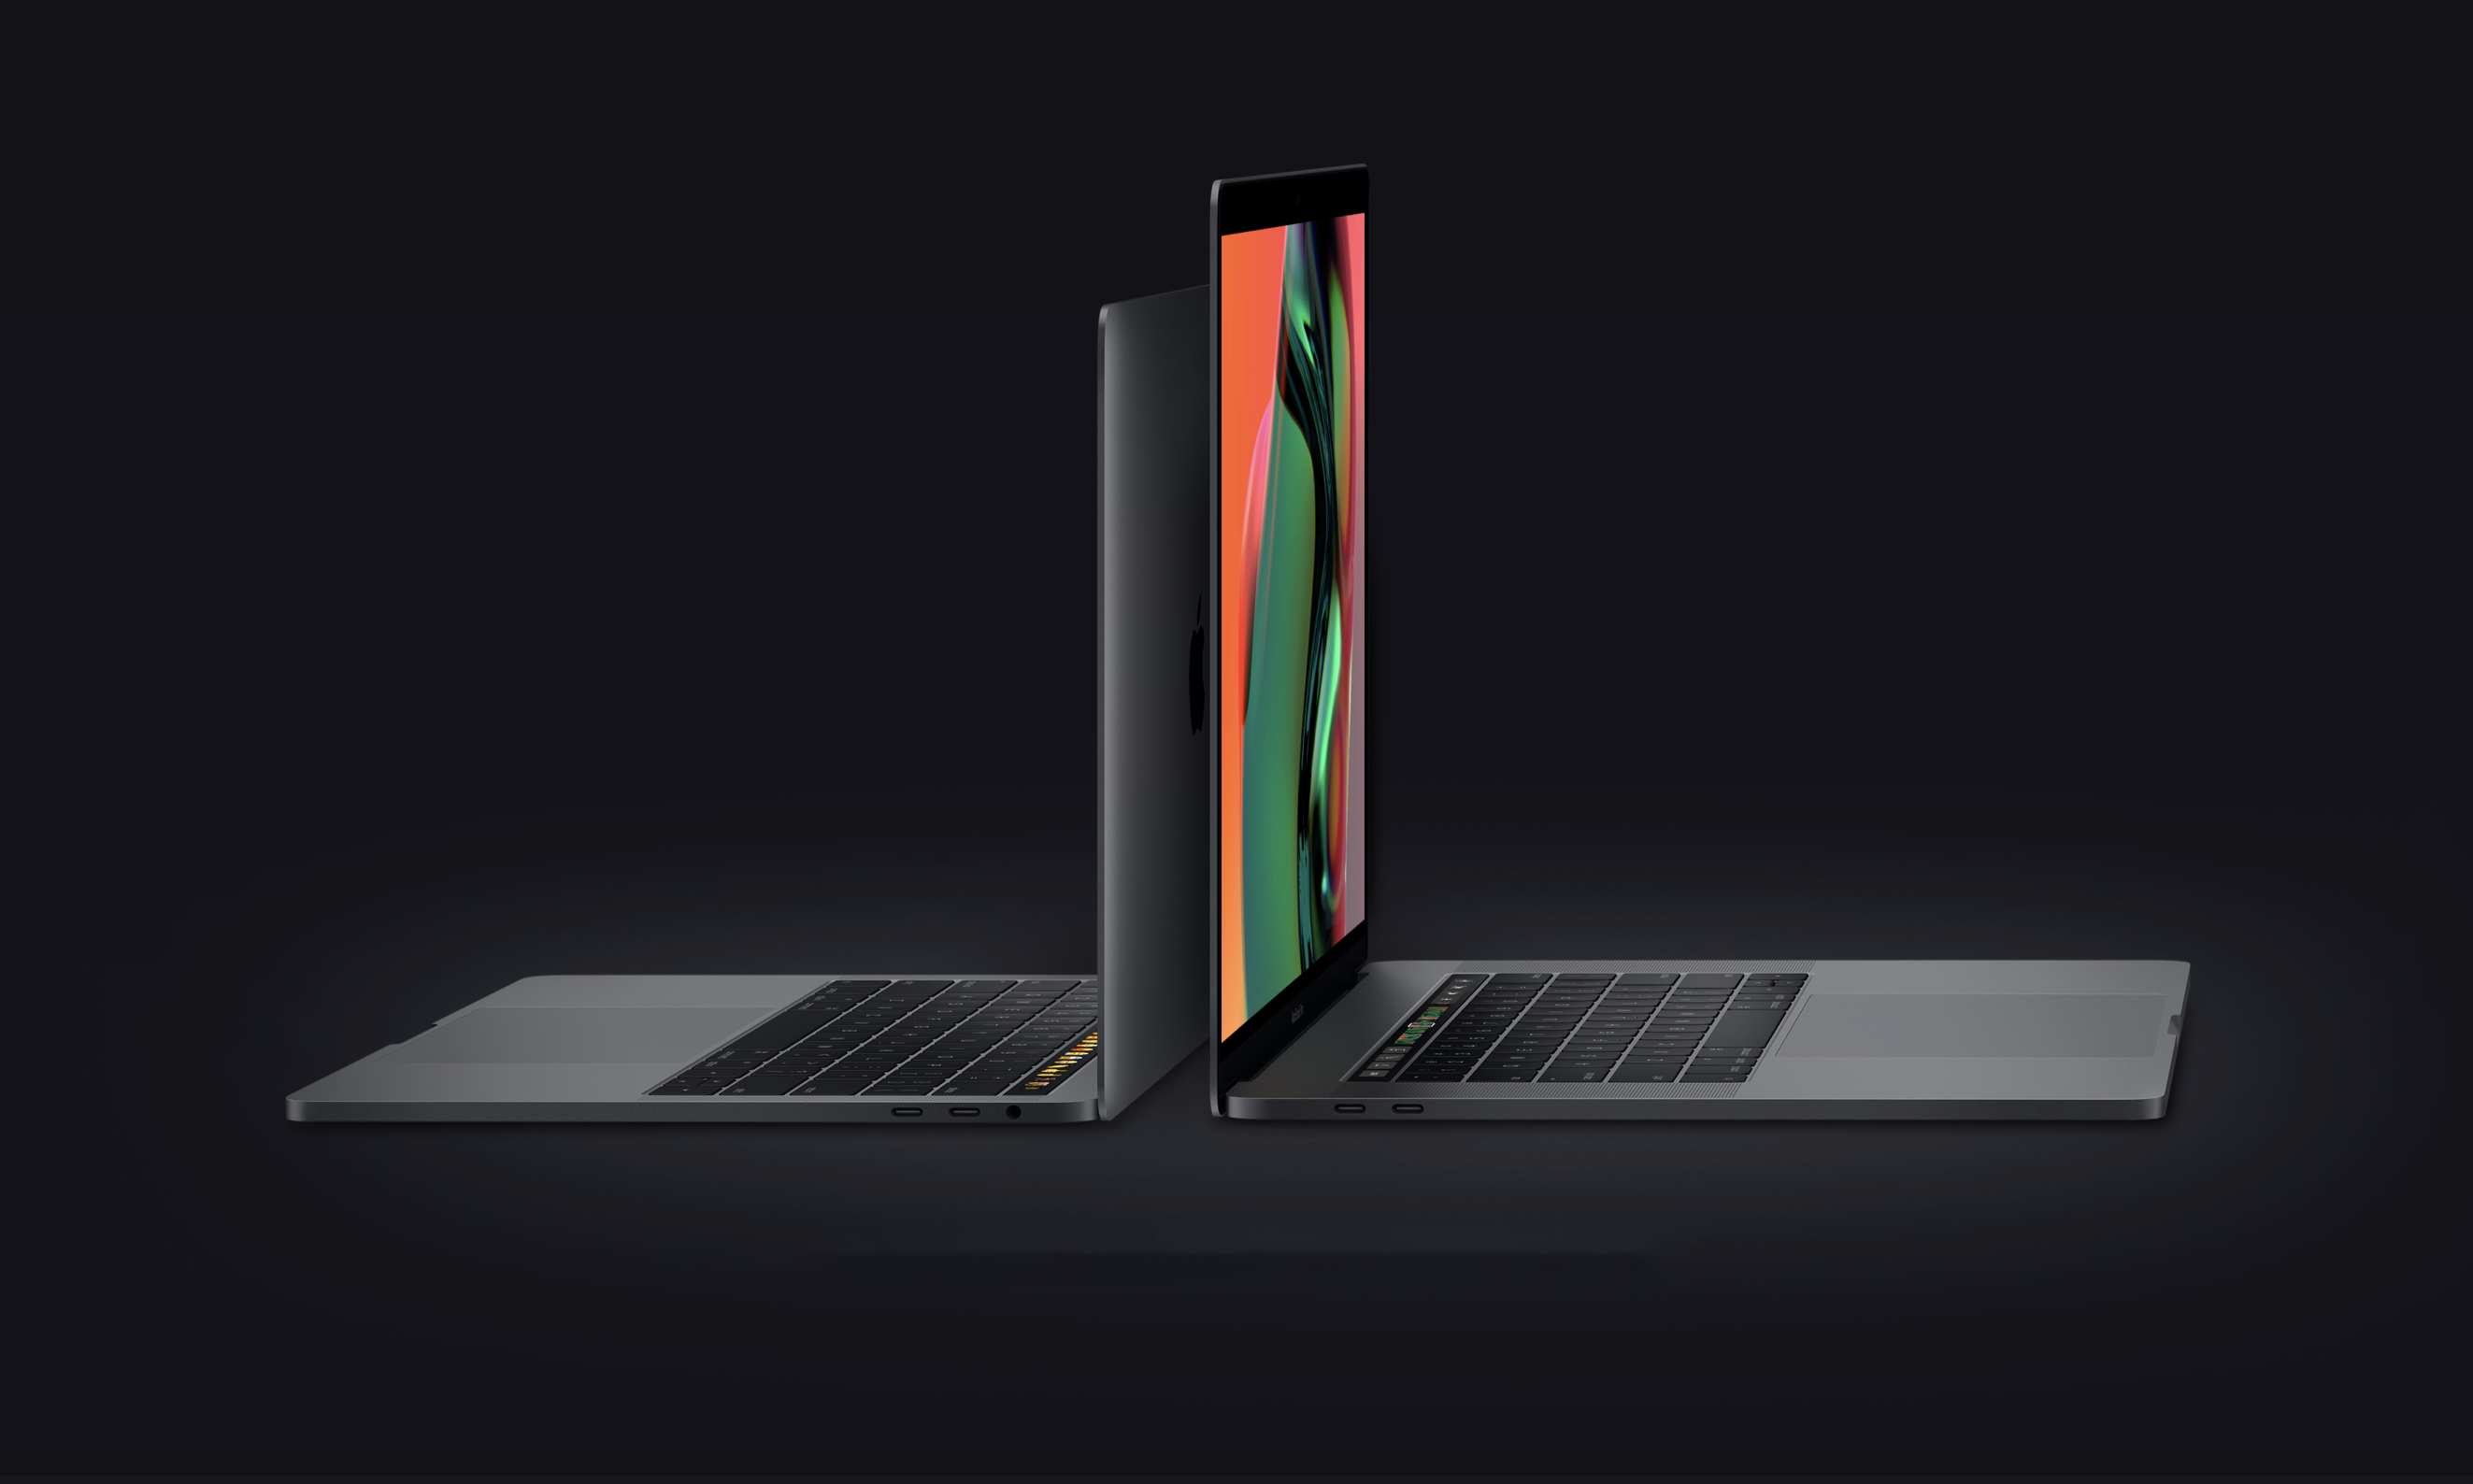 苹果发布新款 8 核 MacBook Pro，改良蝶式键盘